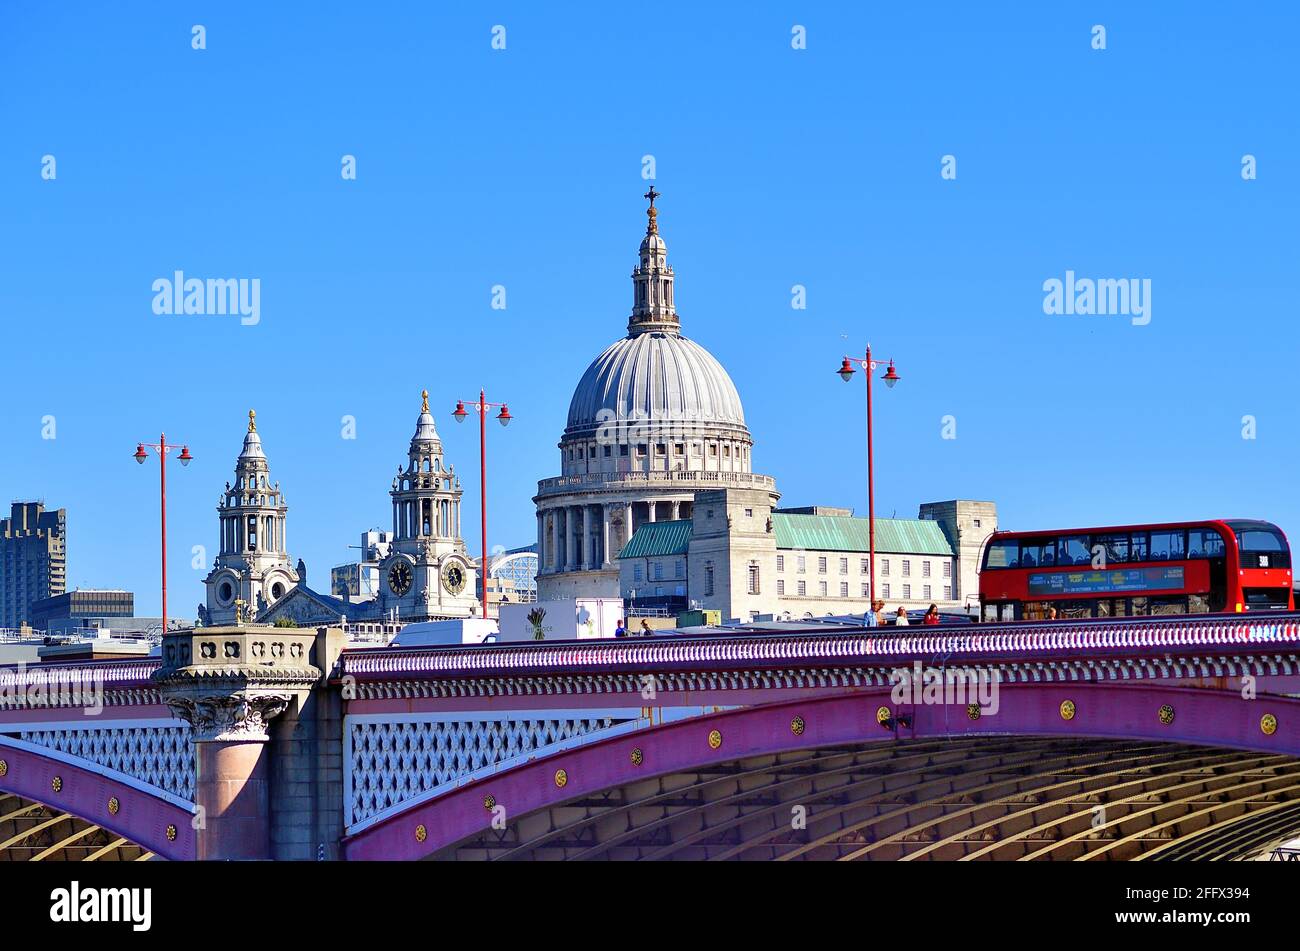 Londra, Inghilterra, Regno Unito. Cattedrale di San Paolo, capolavoro di Sir Christopher Wren in cima alla collina di Ludgate che domina lo skyline. Foto Stock